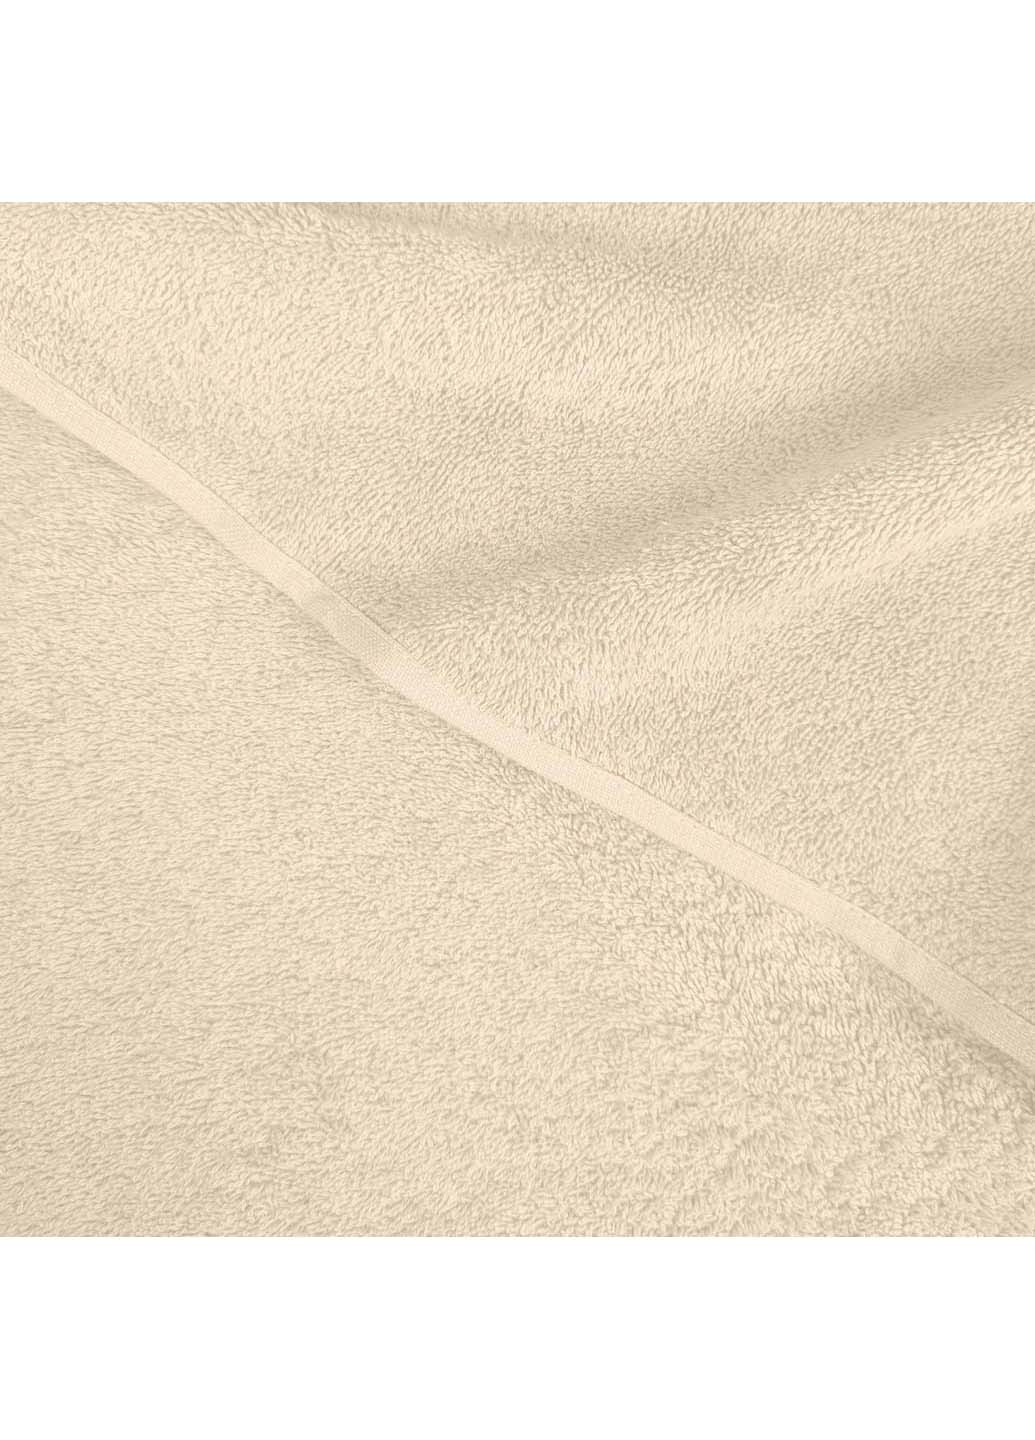 Cosas полотенце махровое 50х90 см бежевый производство -